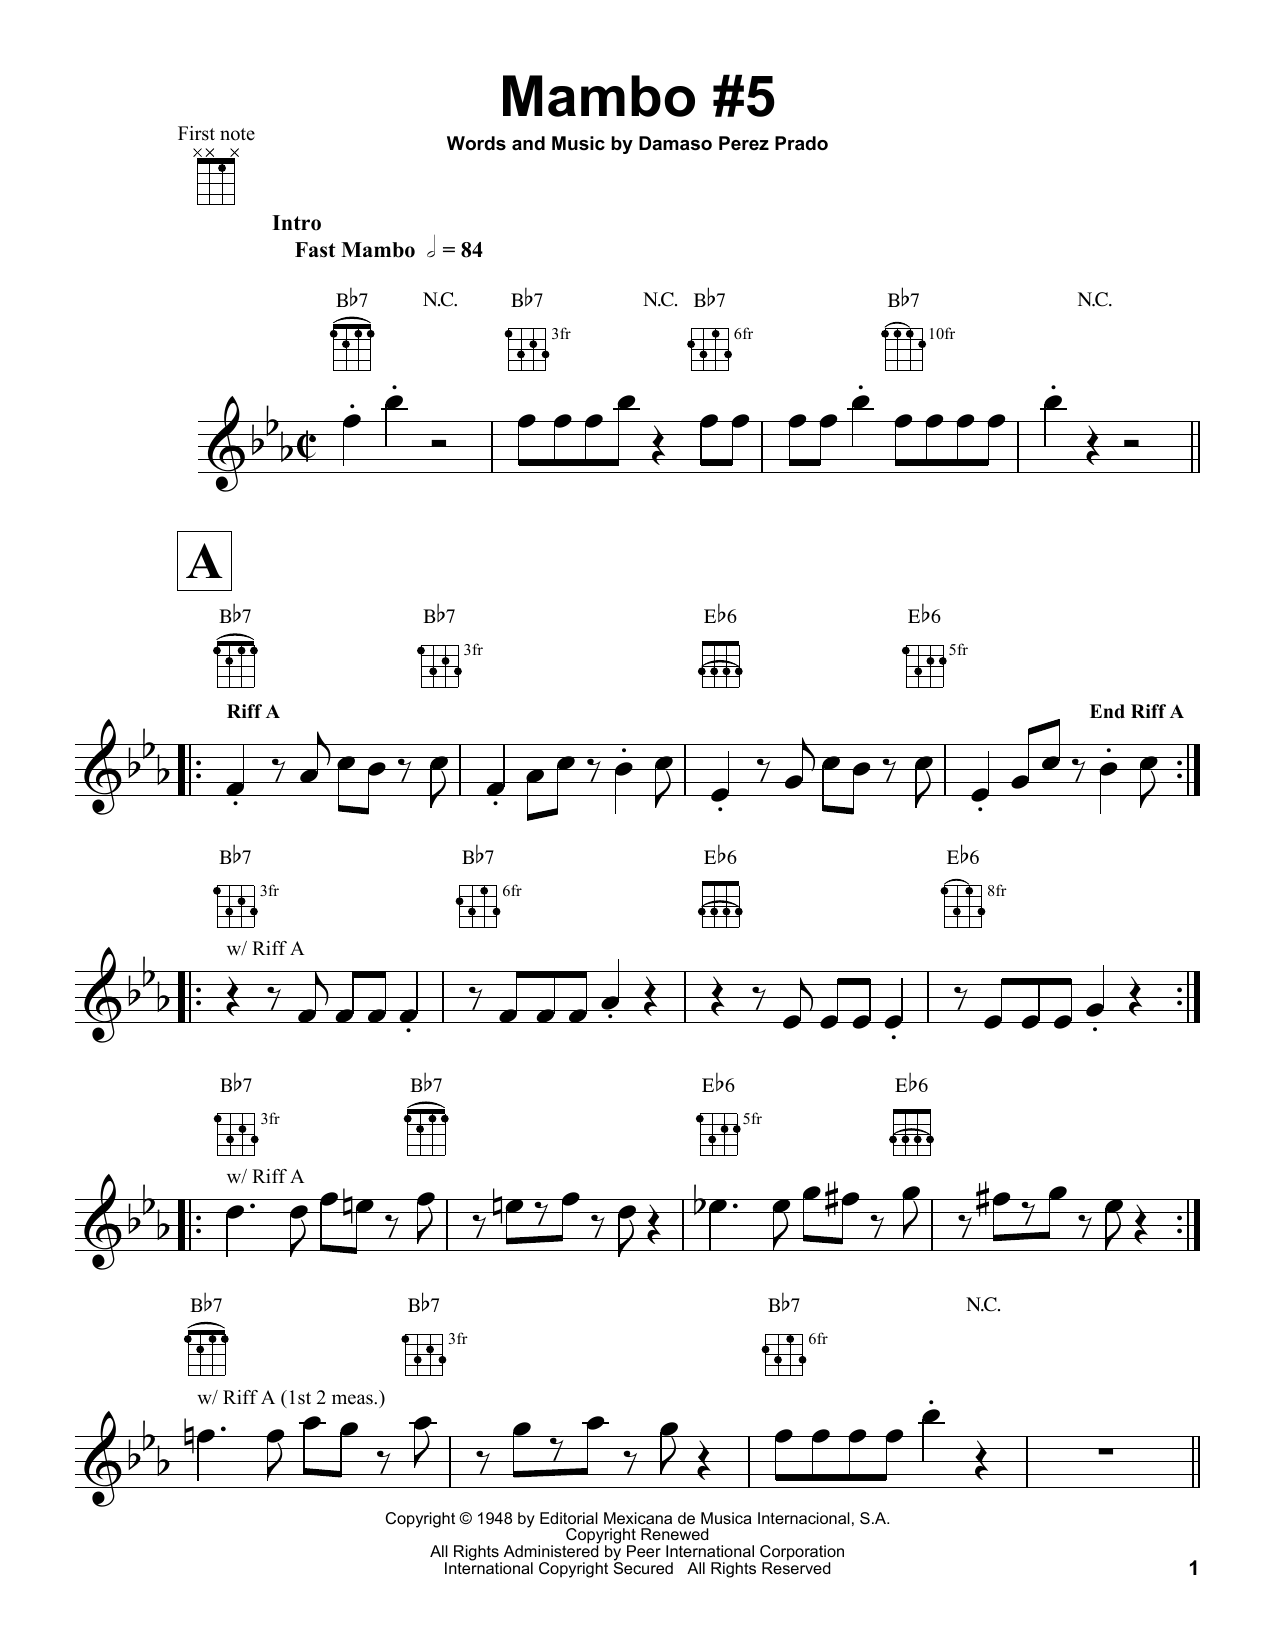 Damaso Perez Prado Mambo #5 sheet music notes and chords arranged for Ukulele